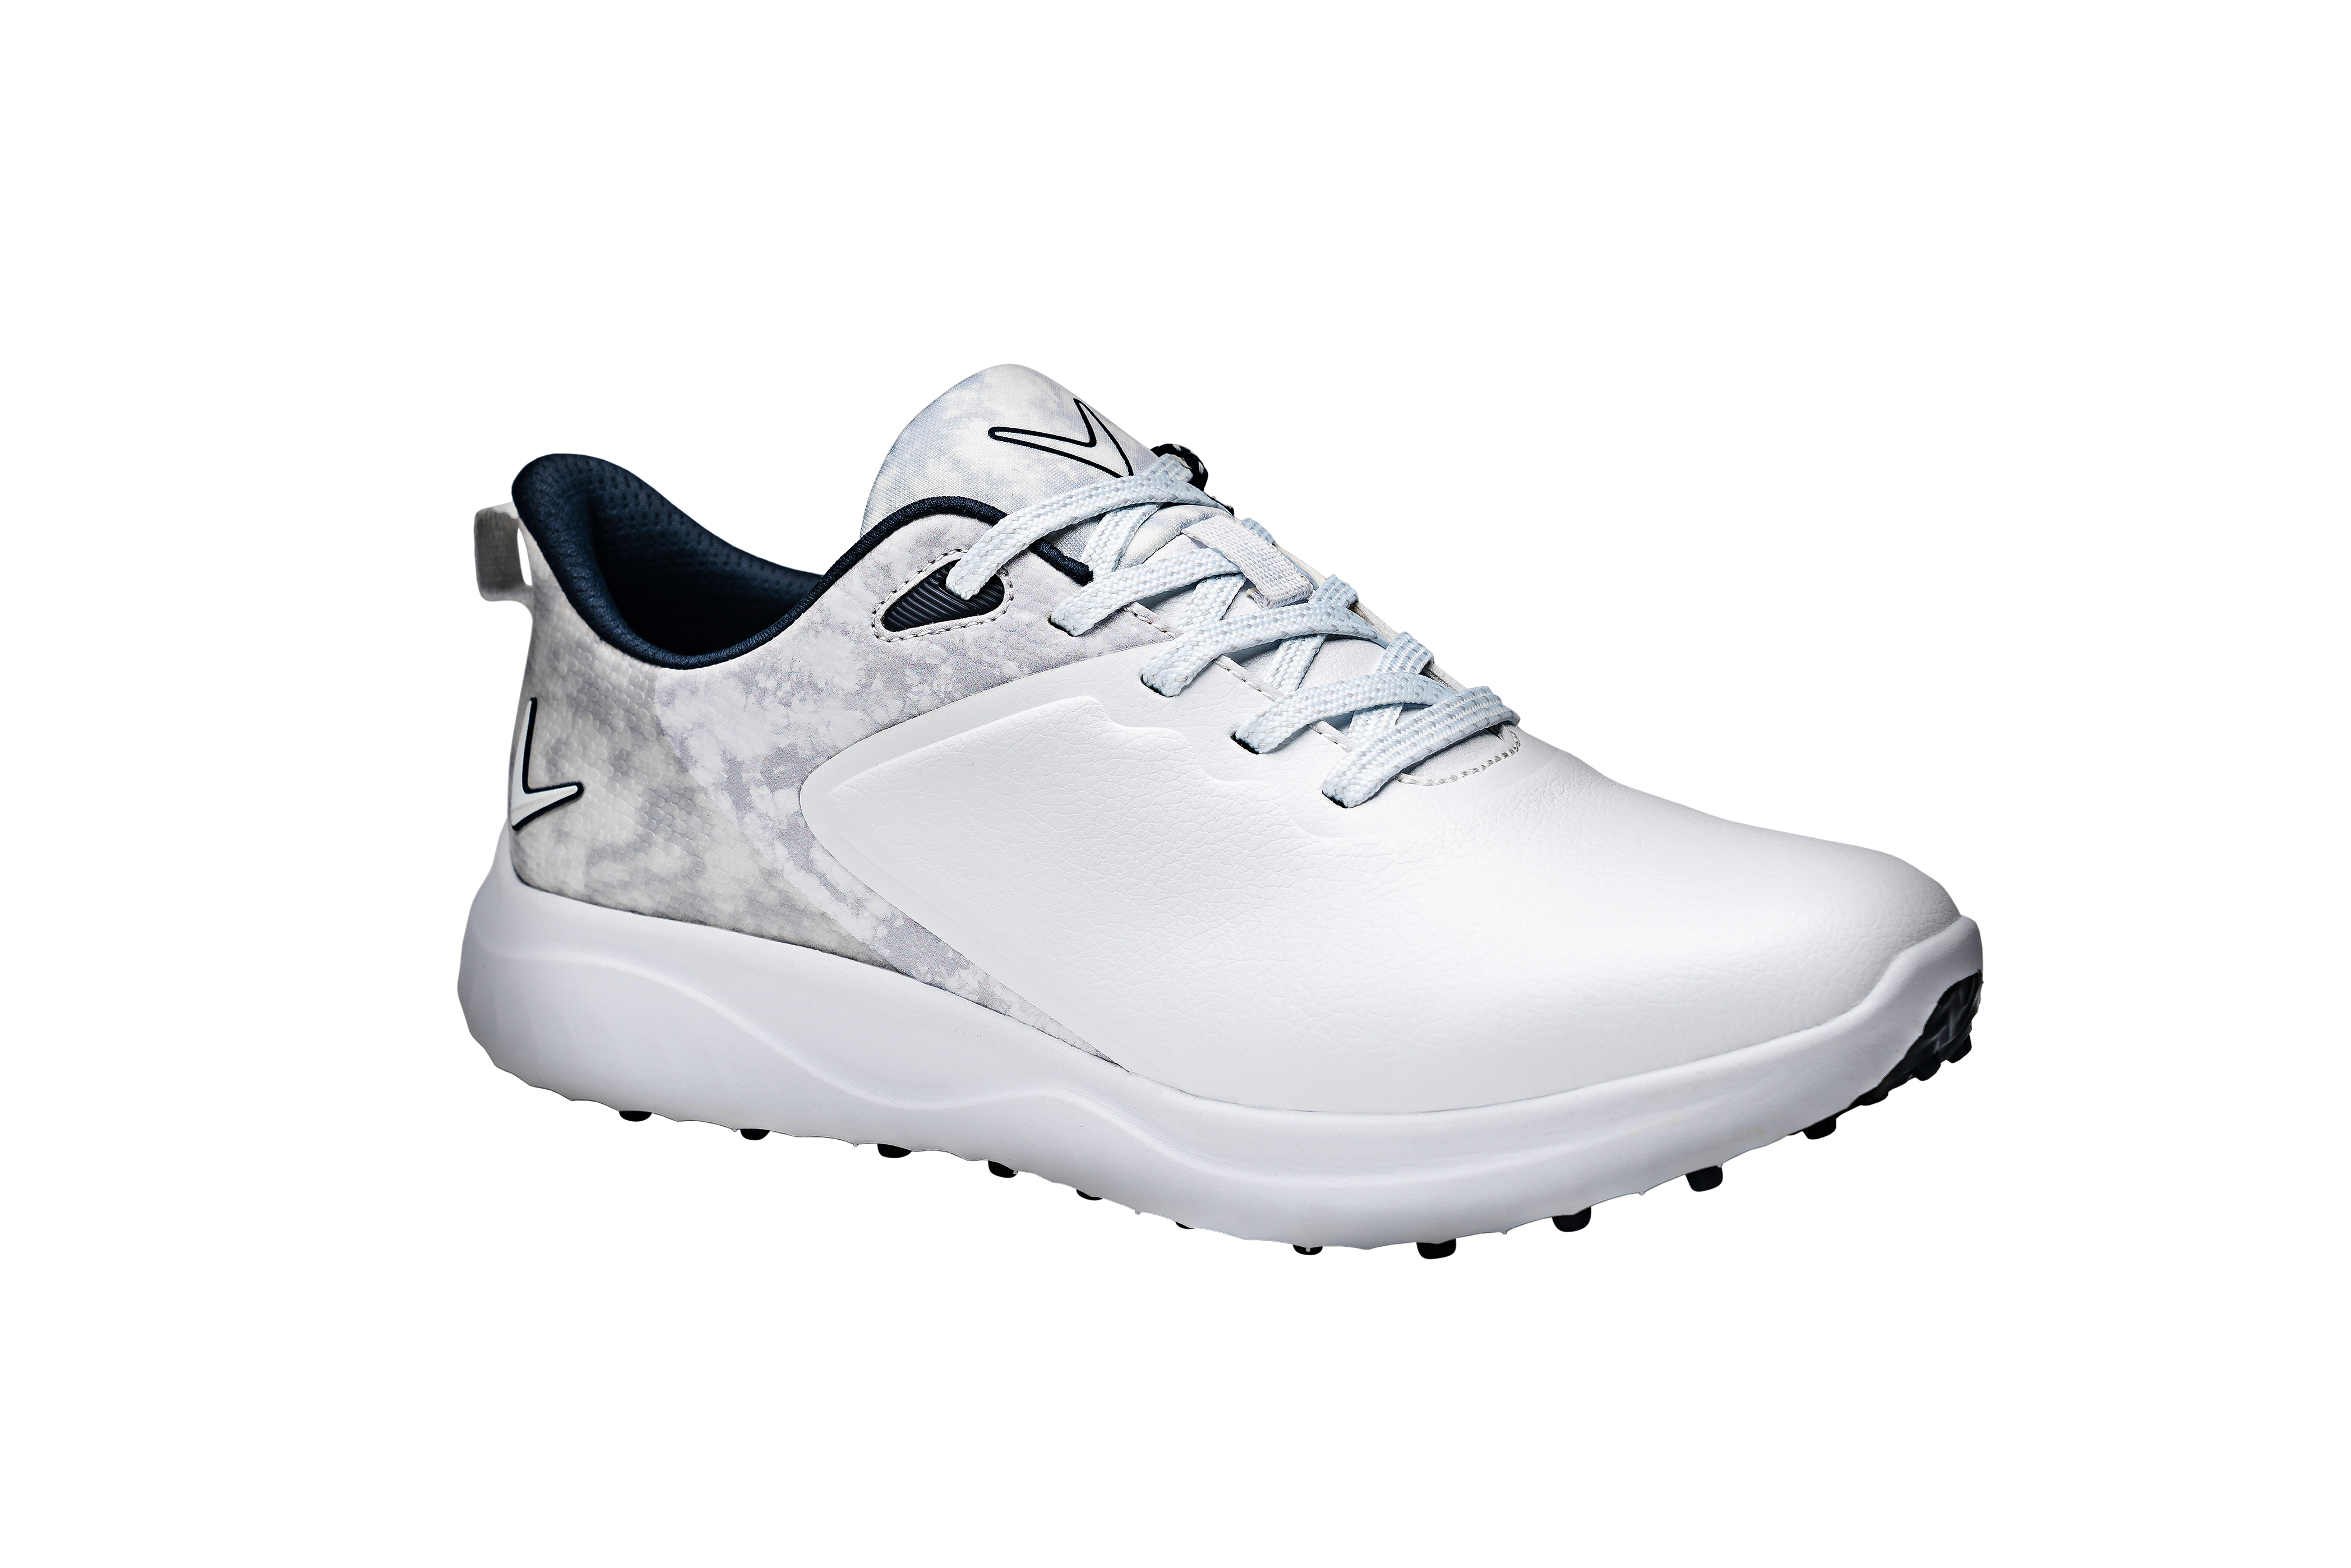 Callaway Anza dámské golfové boty, bílé/šedé, vel. 5,5 UK